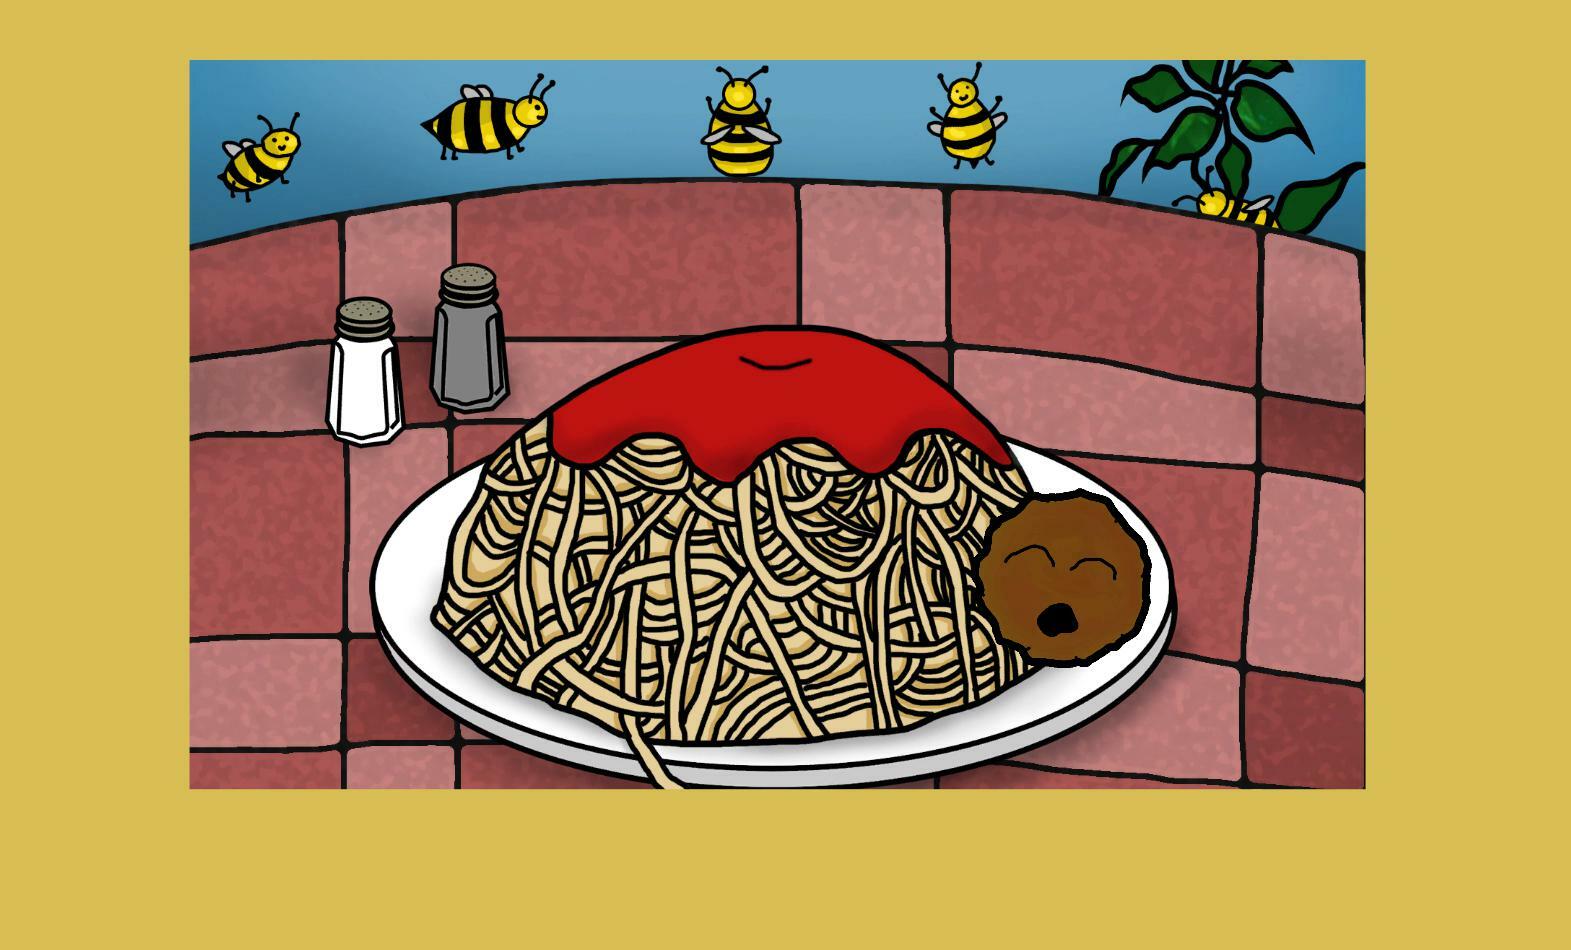 Скачай 2 версии игры про спагетти. Игра про спагетти Холи БАМ. Holy BAAM спагетти. Закачай игру про спагетти. Игра про спагетти картинки.